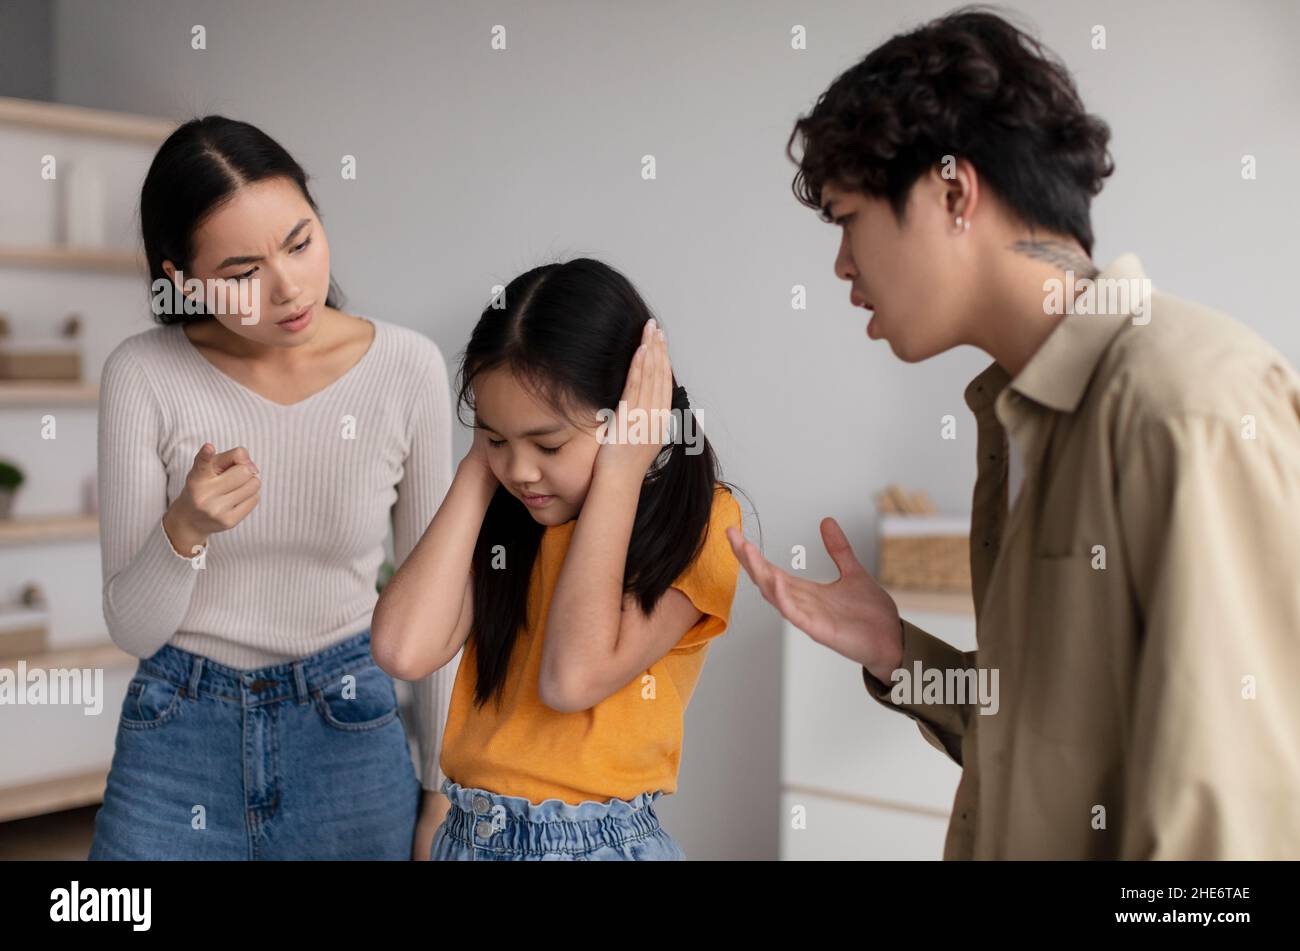 La petite fille de l'adolescence desappariée ferme ses oreilles afin de ne pas entendre ses parents, la jeune femme asiatique et le gars fille de rhume Banque D'Images